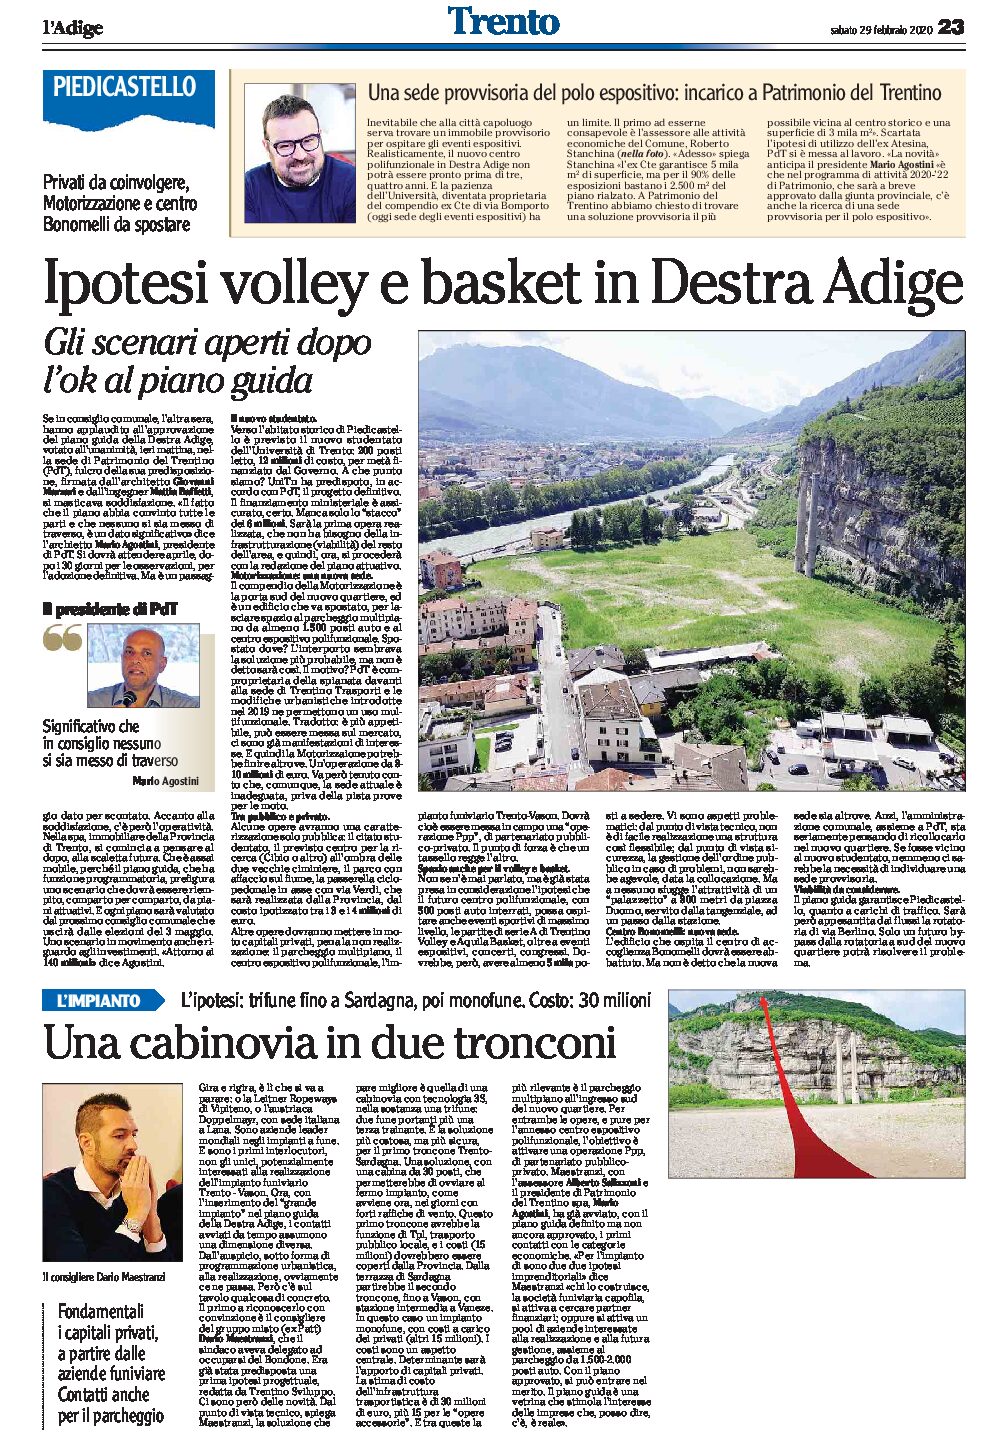 Trento, Destra Adige: gli scenari aperti dopo l’ok al piano guida